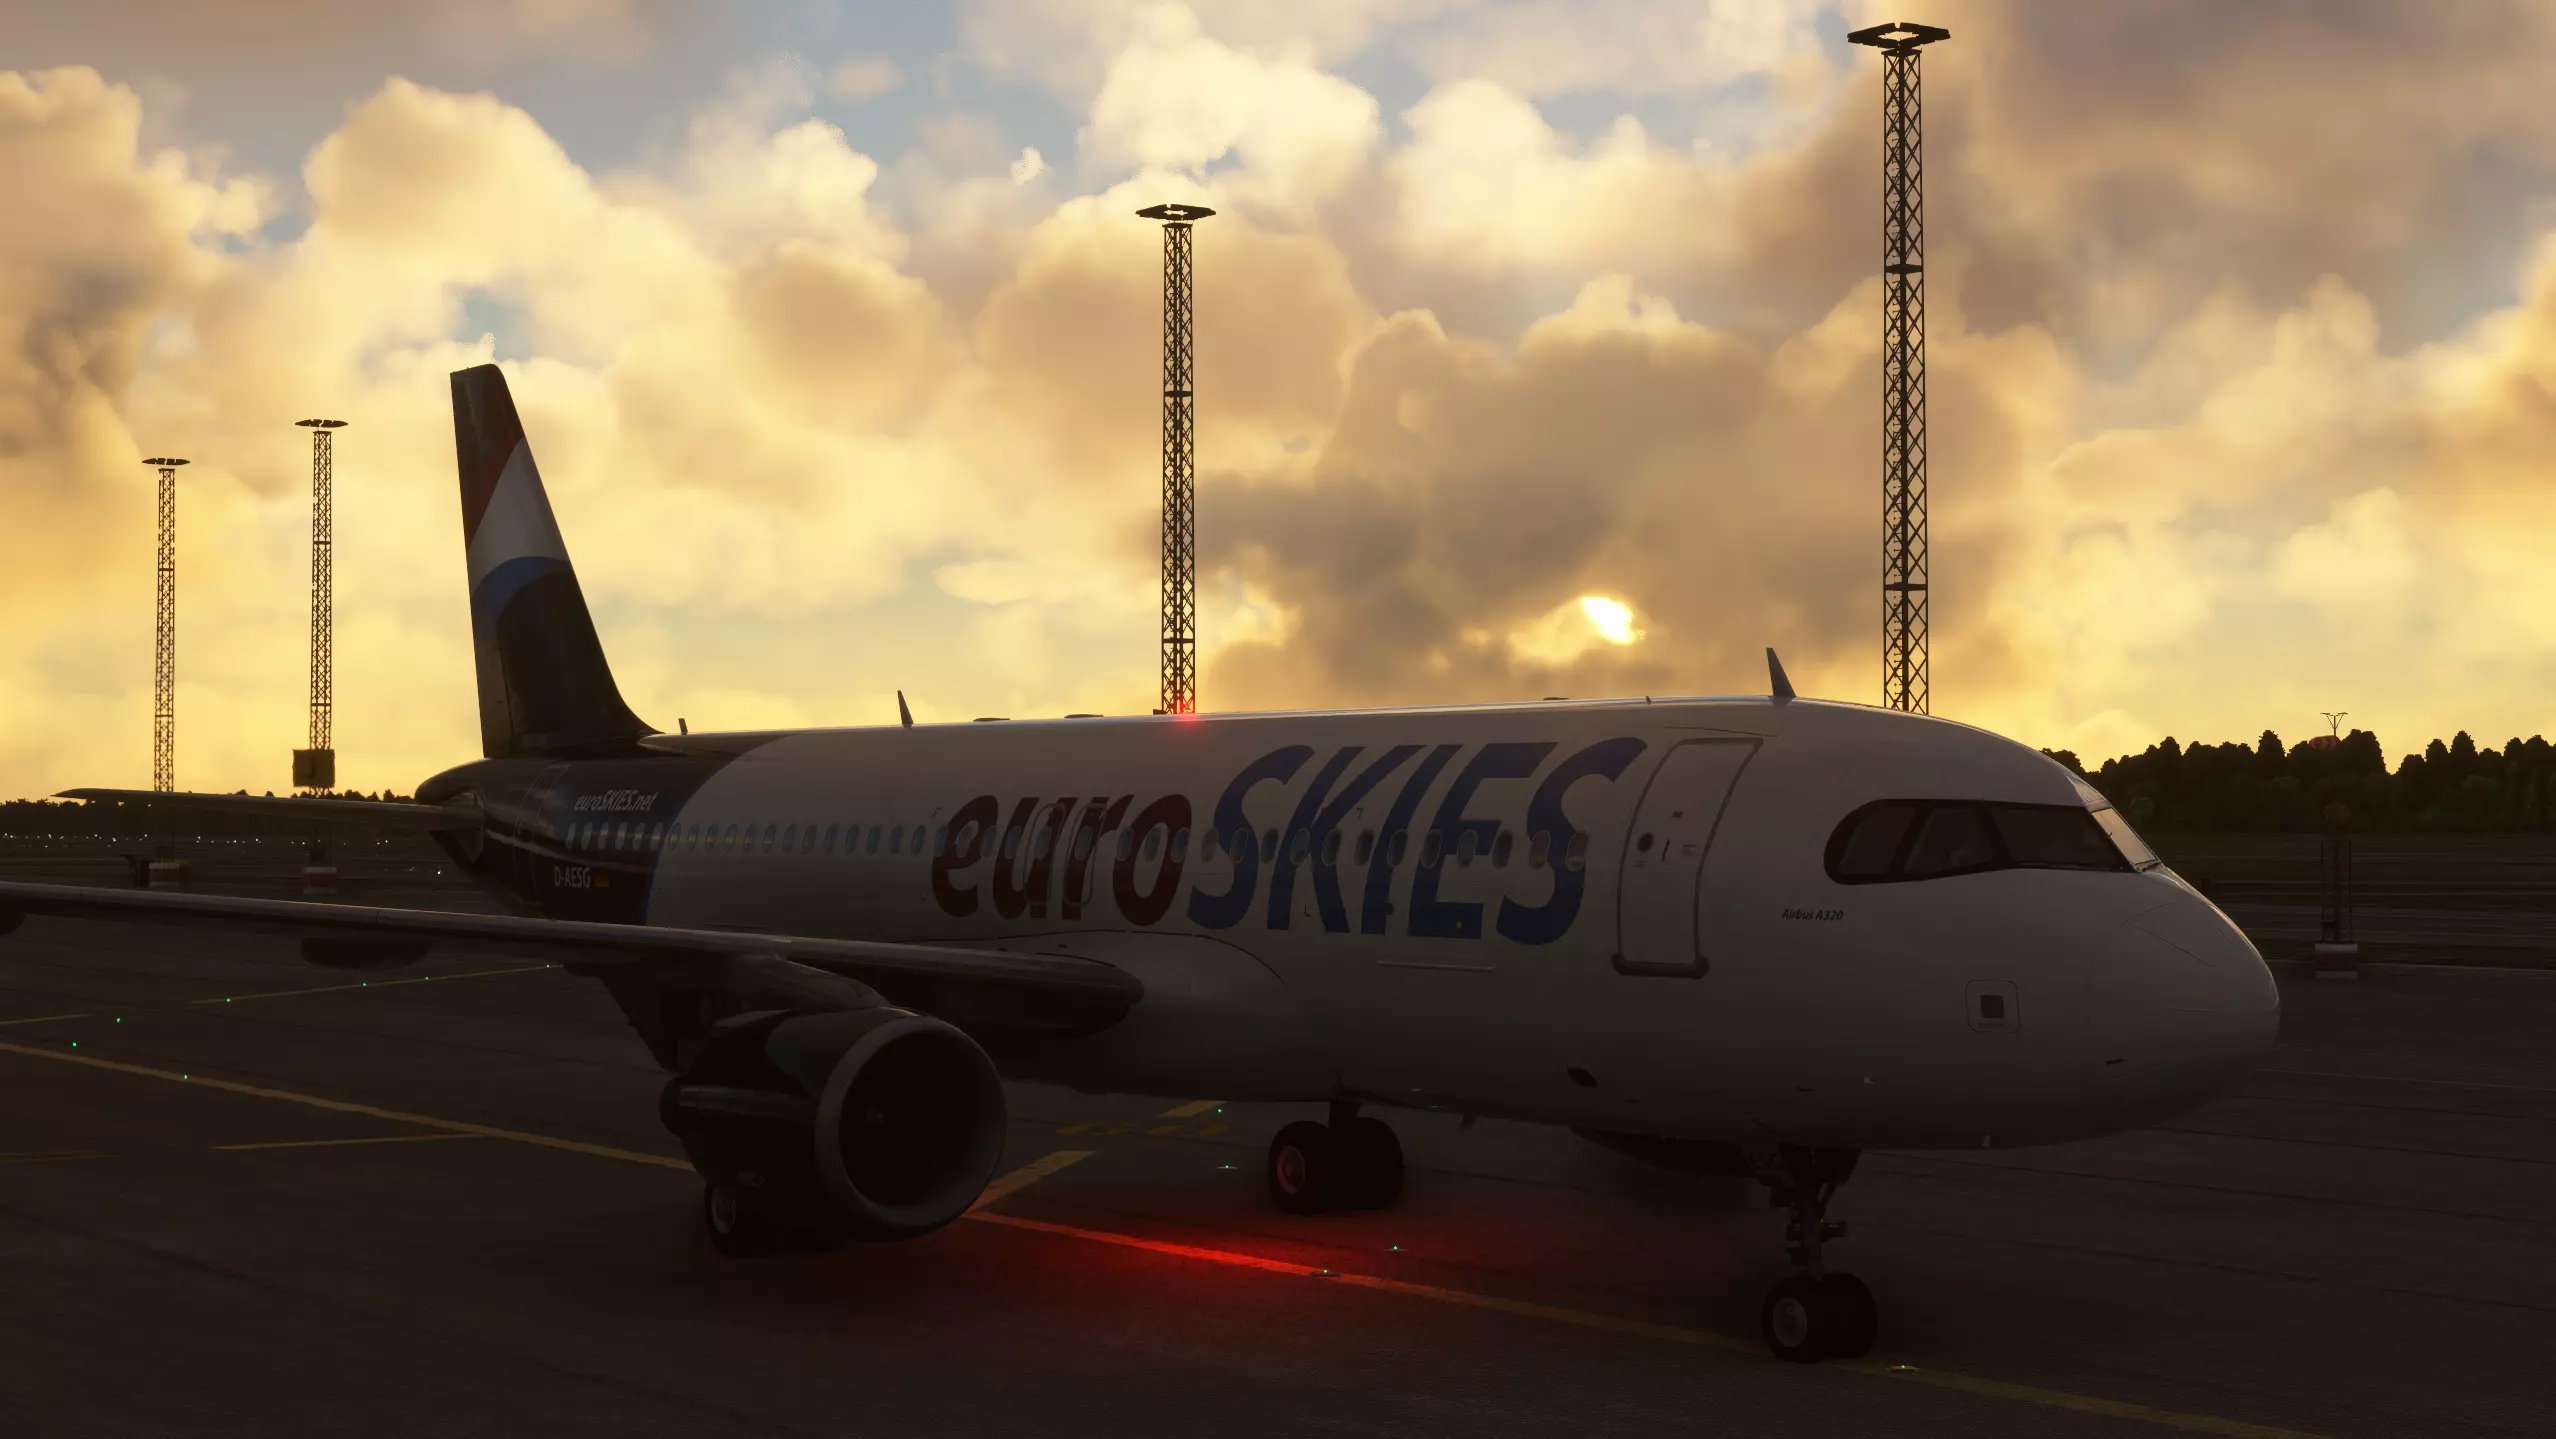 euroSKIES virtuelle Fluggesellschaft A320 rollt in den Sonnenuntergang 